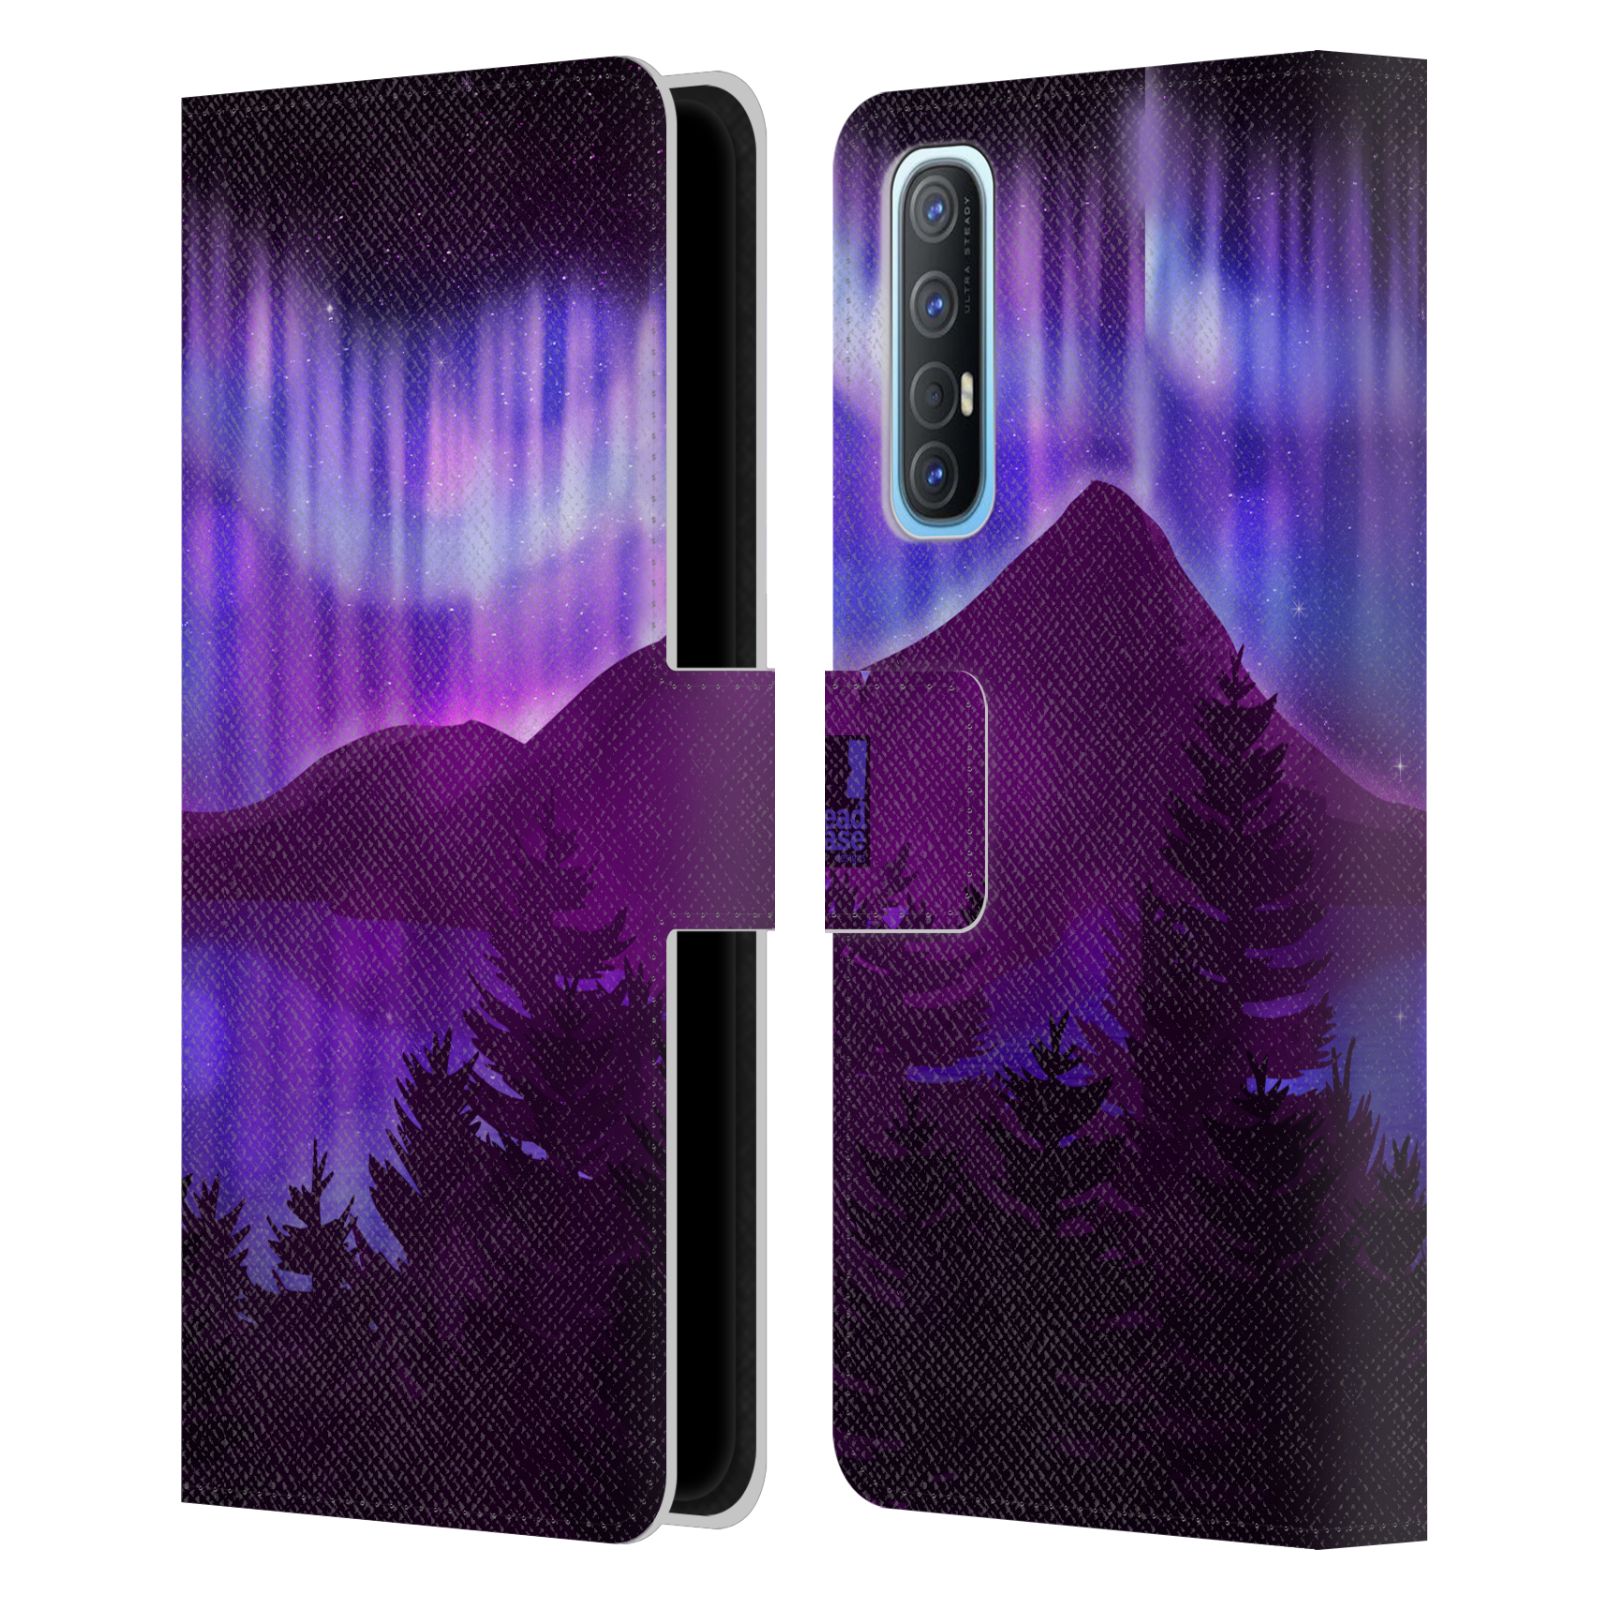 Pouzdro na mobil Oppo Find X2 NEO - HEAD CASE - Hory a lesy fialový odstín